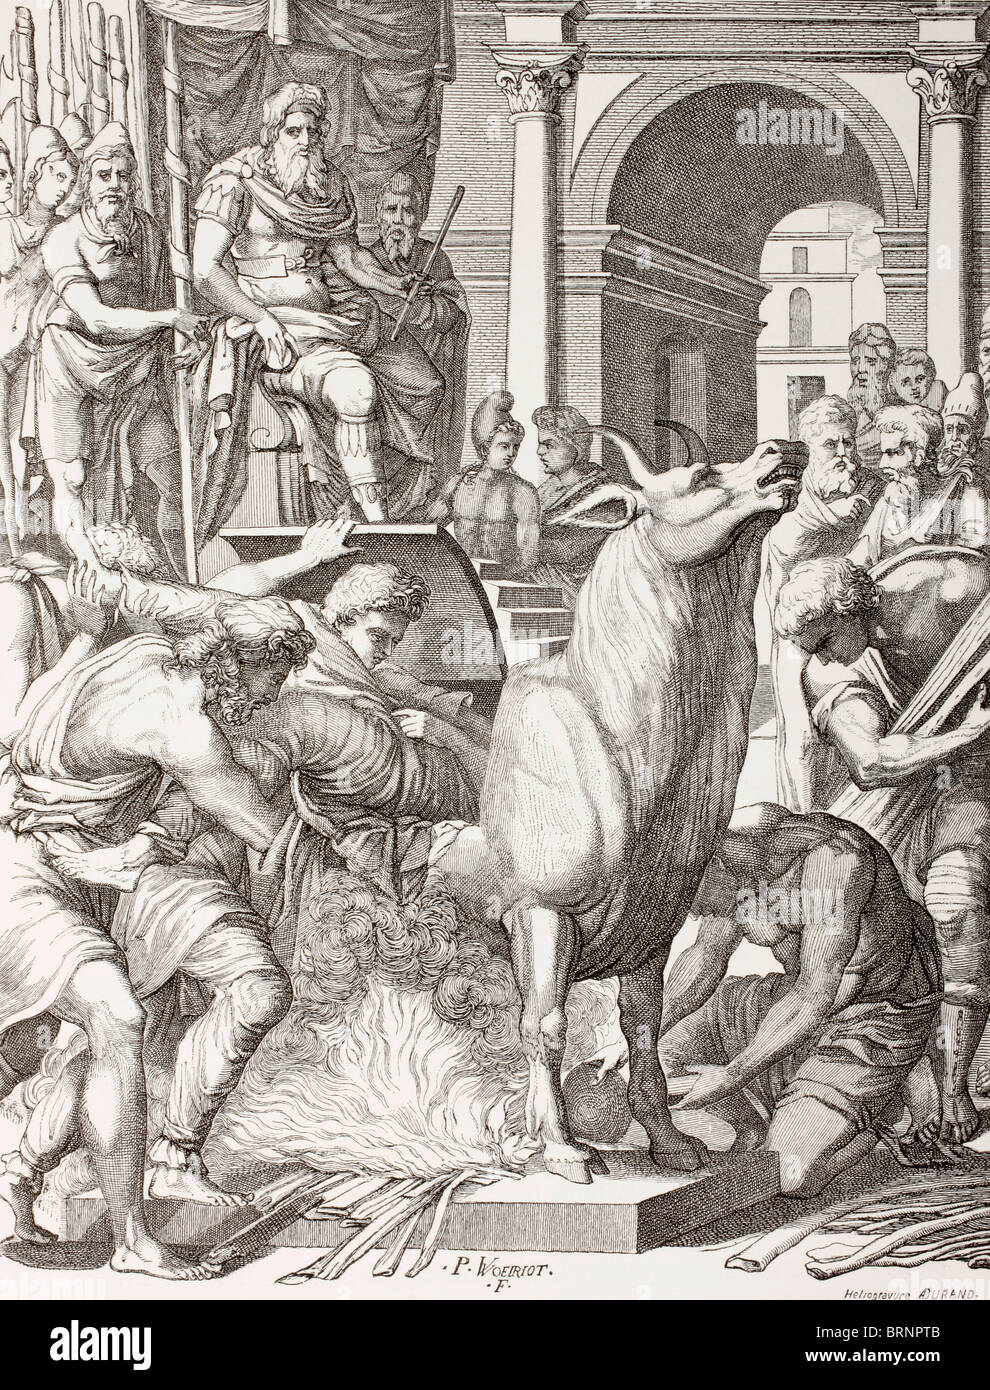 Phalaris el tirano de Acragas (Agrigentum), Sicilia, condenando el escultor Perillus a morir en el toro de bronce. Foto de stock